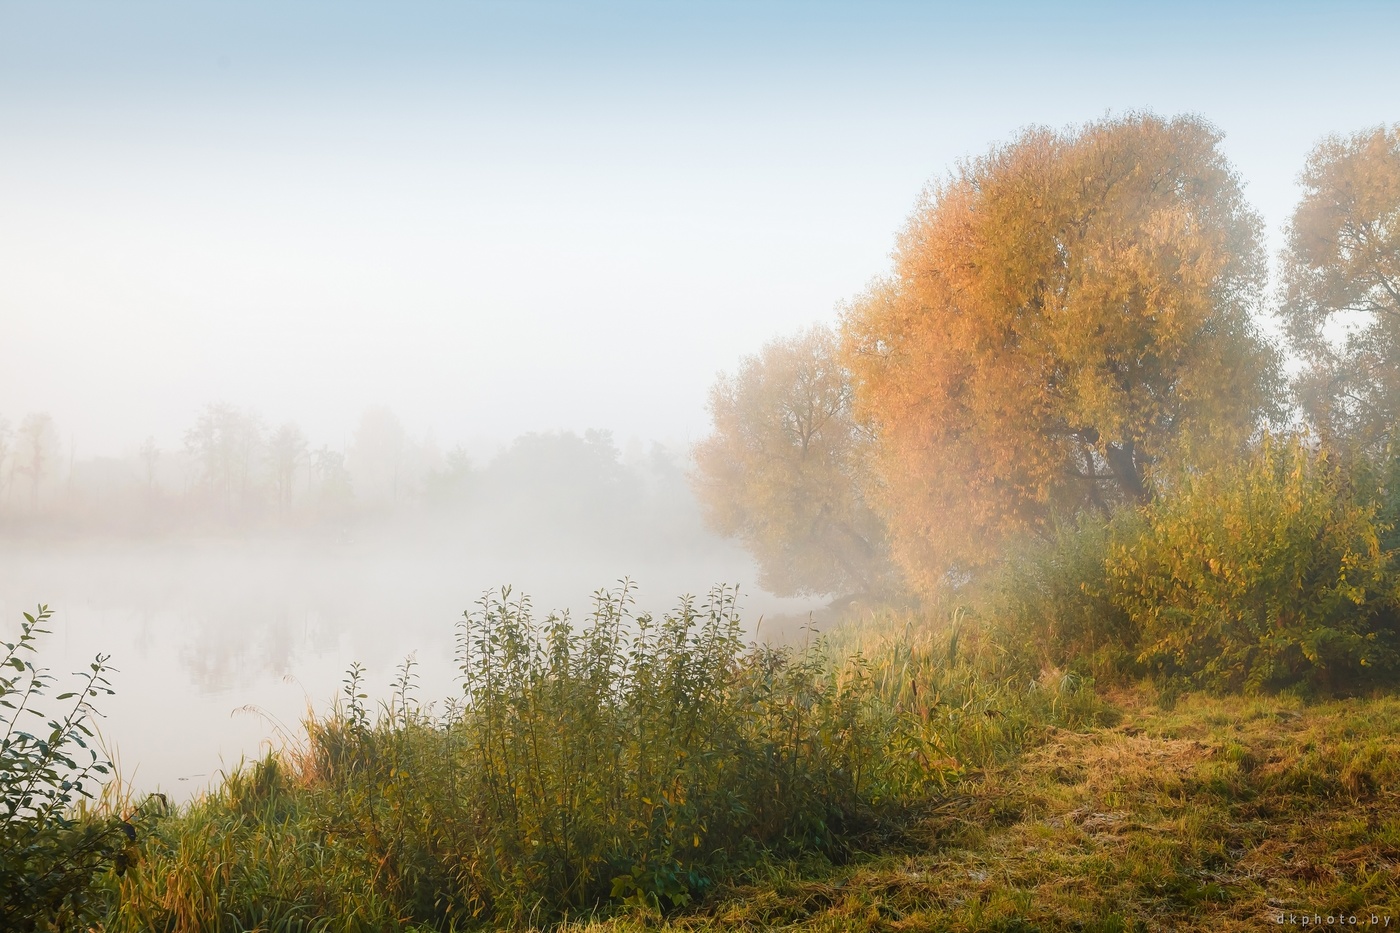 картинки с туманом осенью доброе утро